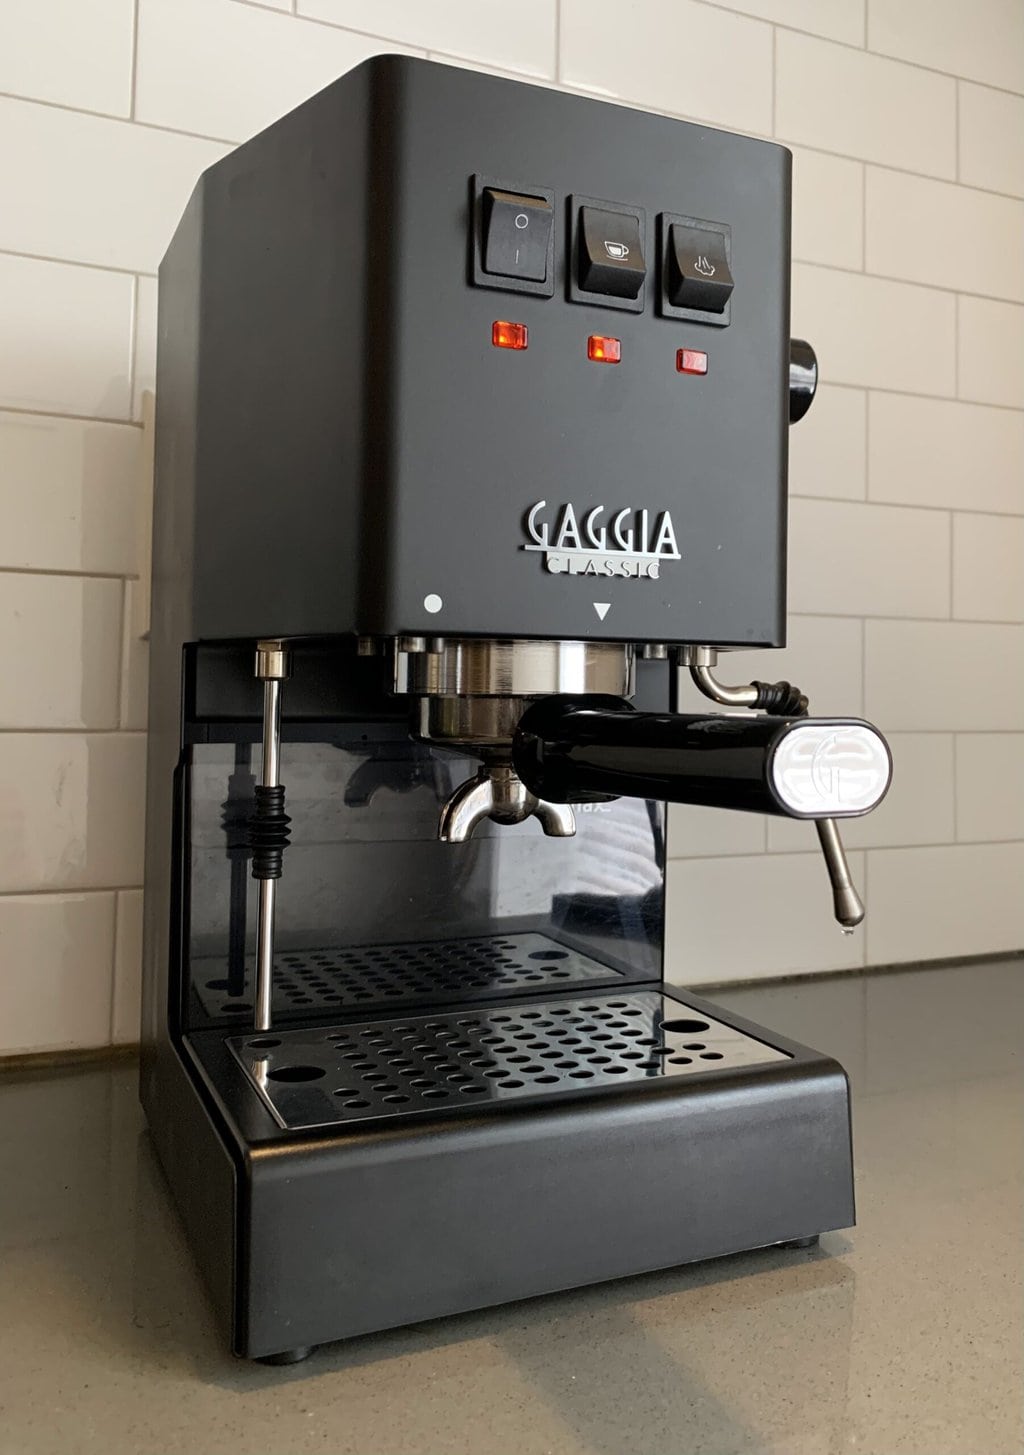 Gaggia Classic Pro Espresso Machine Body